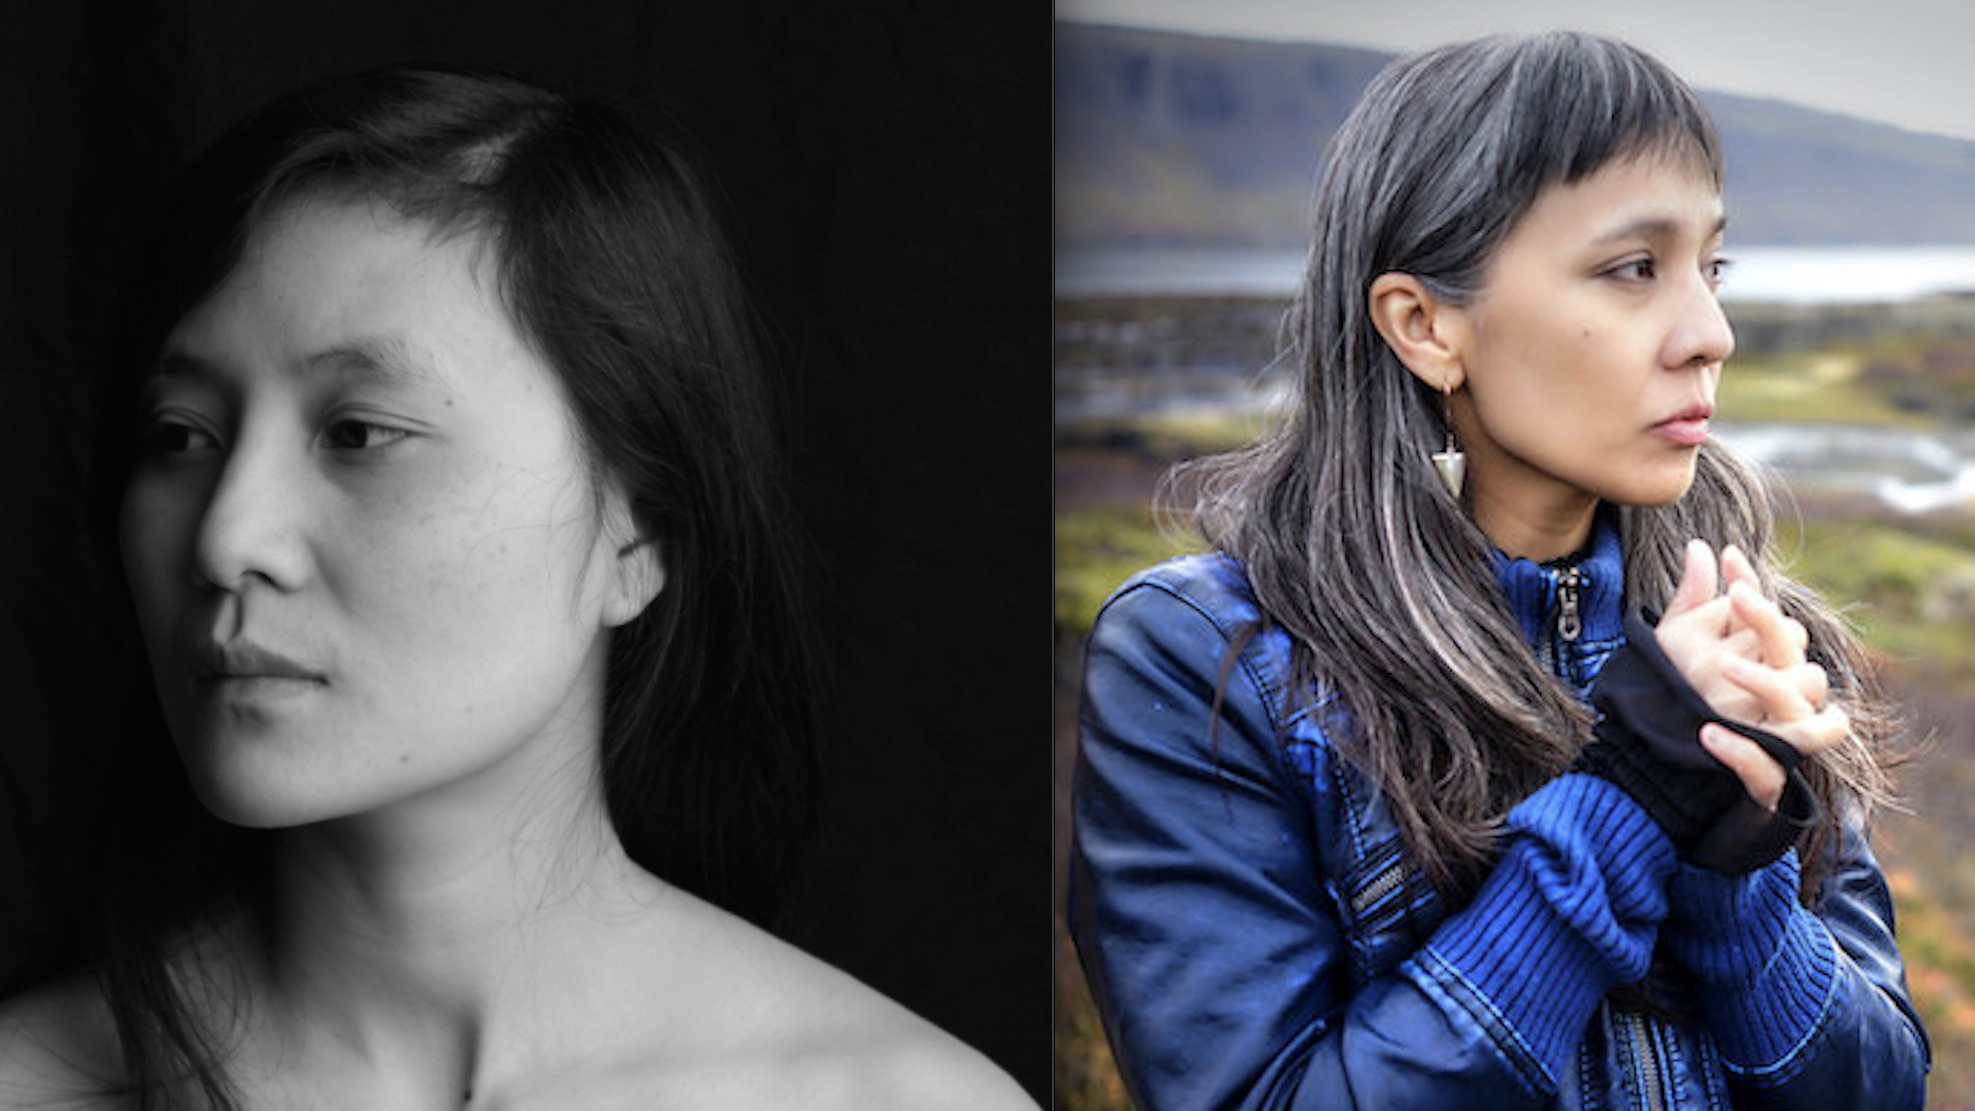 color portrait photos of poet-writers Vi Khi Nao + Dao Strom